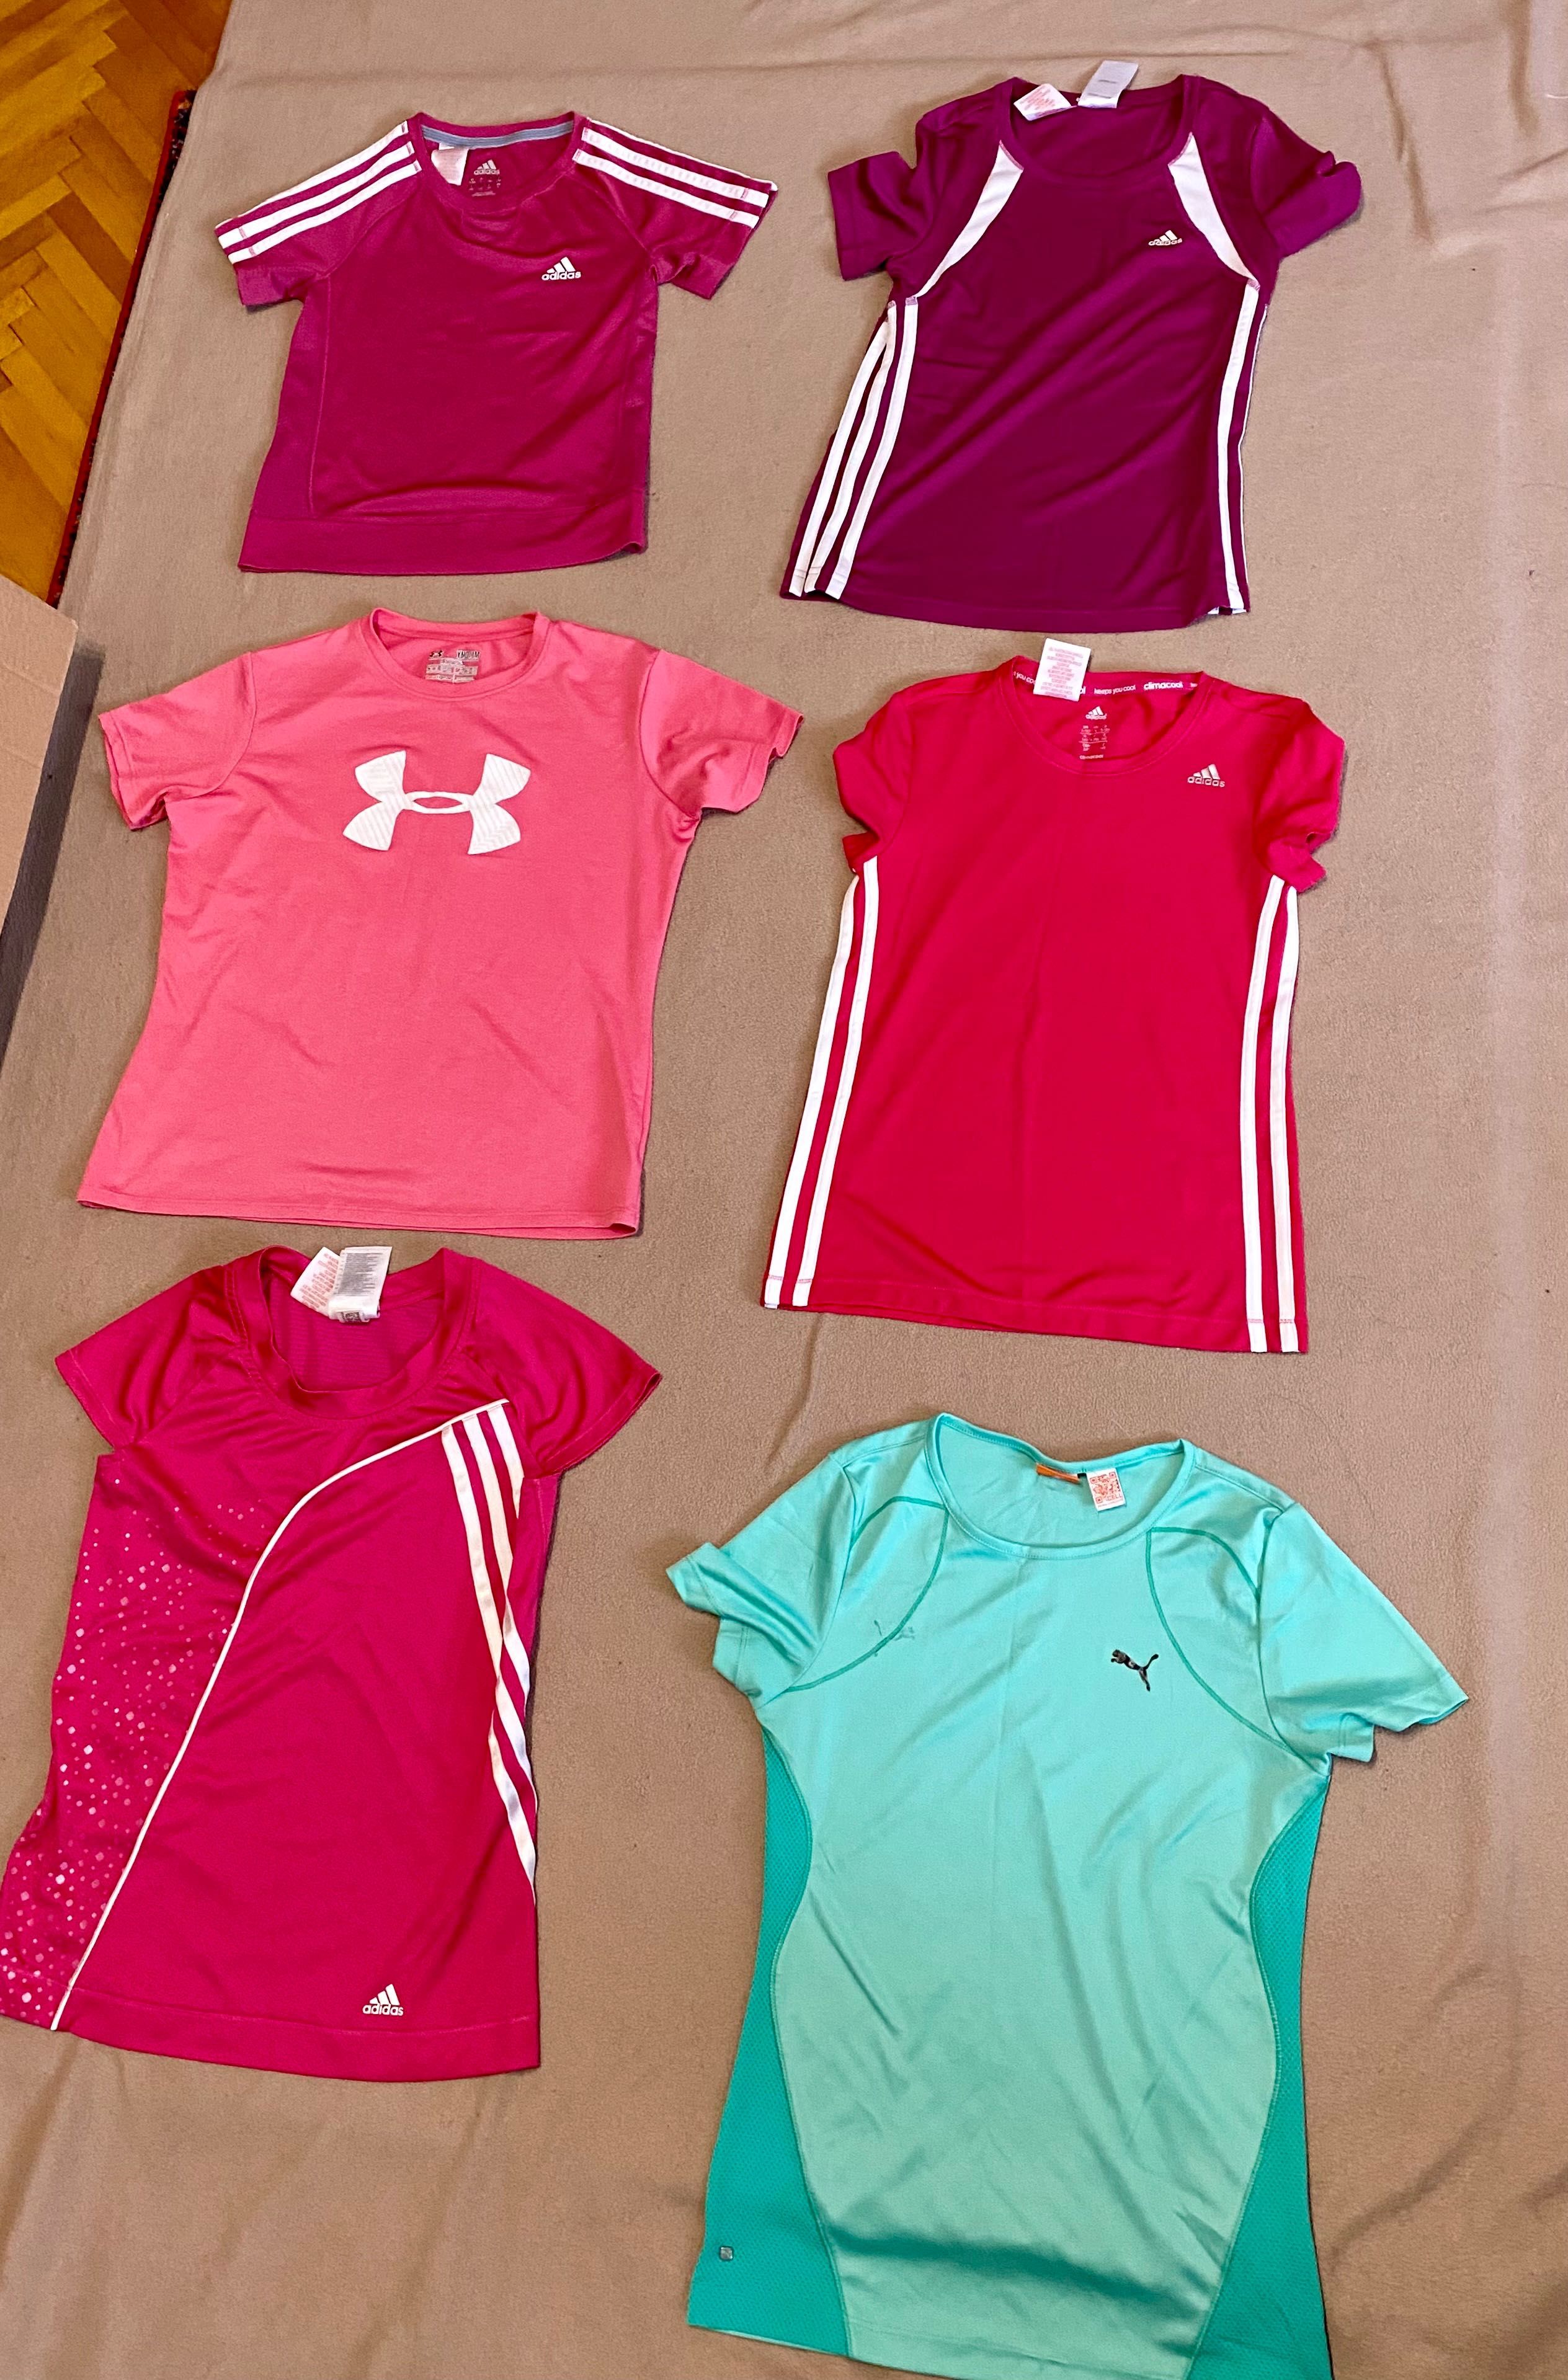 De vanzare tricouri sport fete 9-14 ani Adidas si alte marci